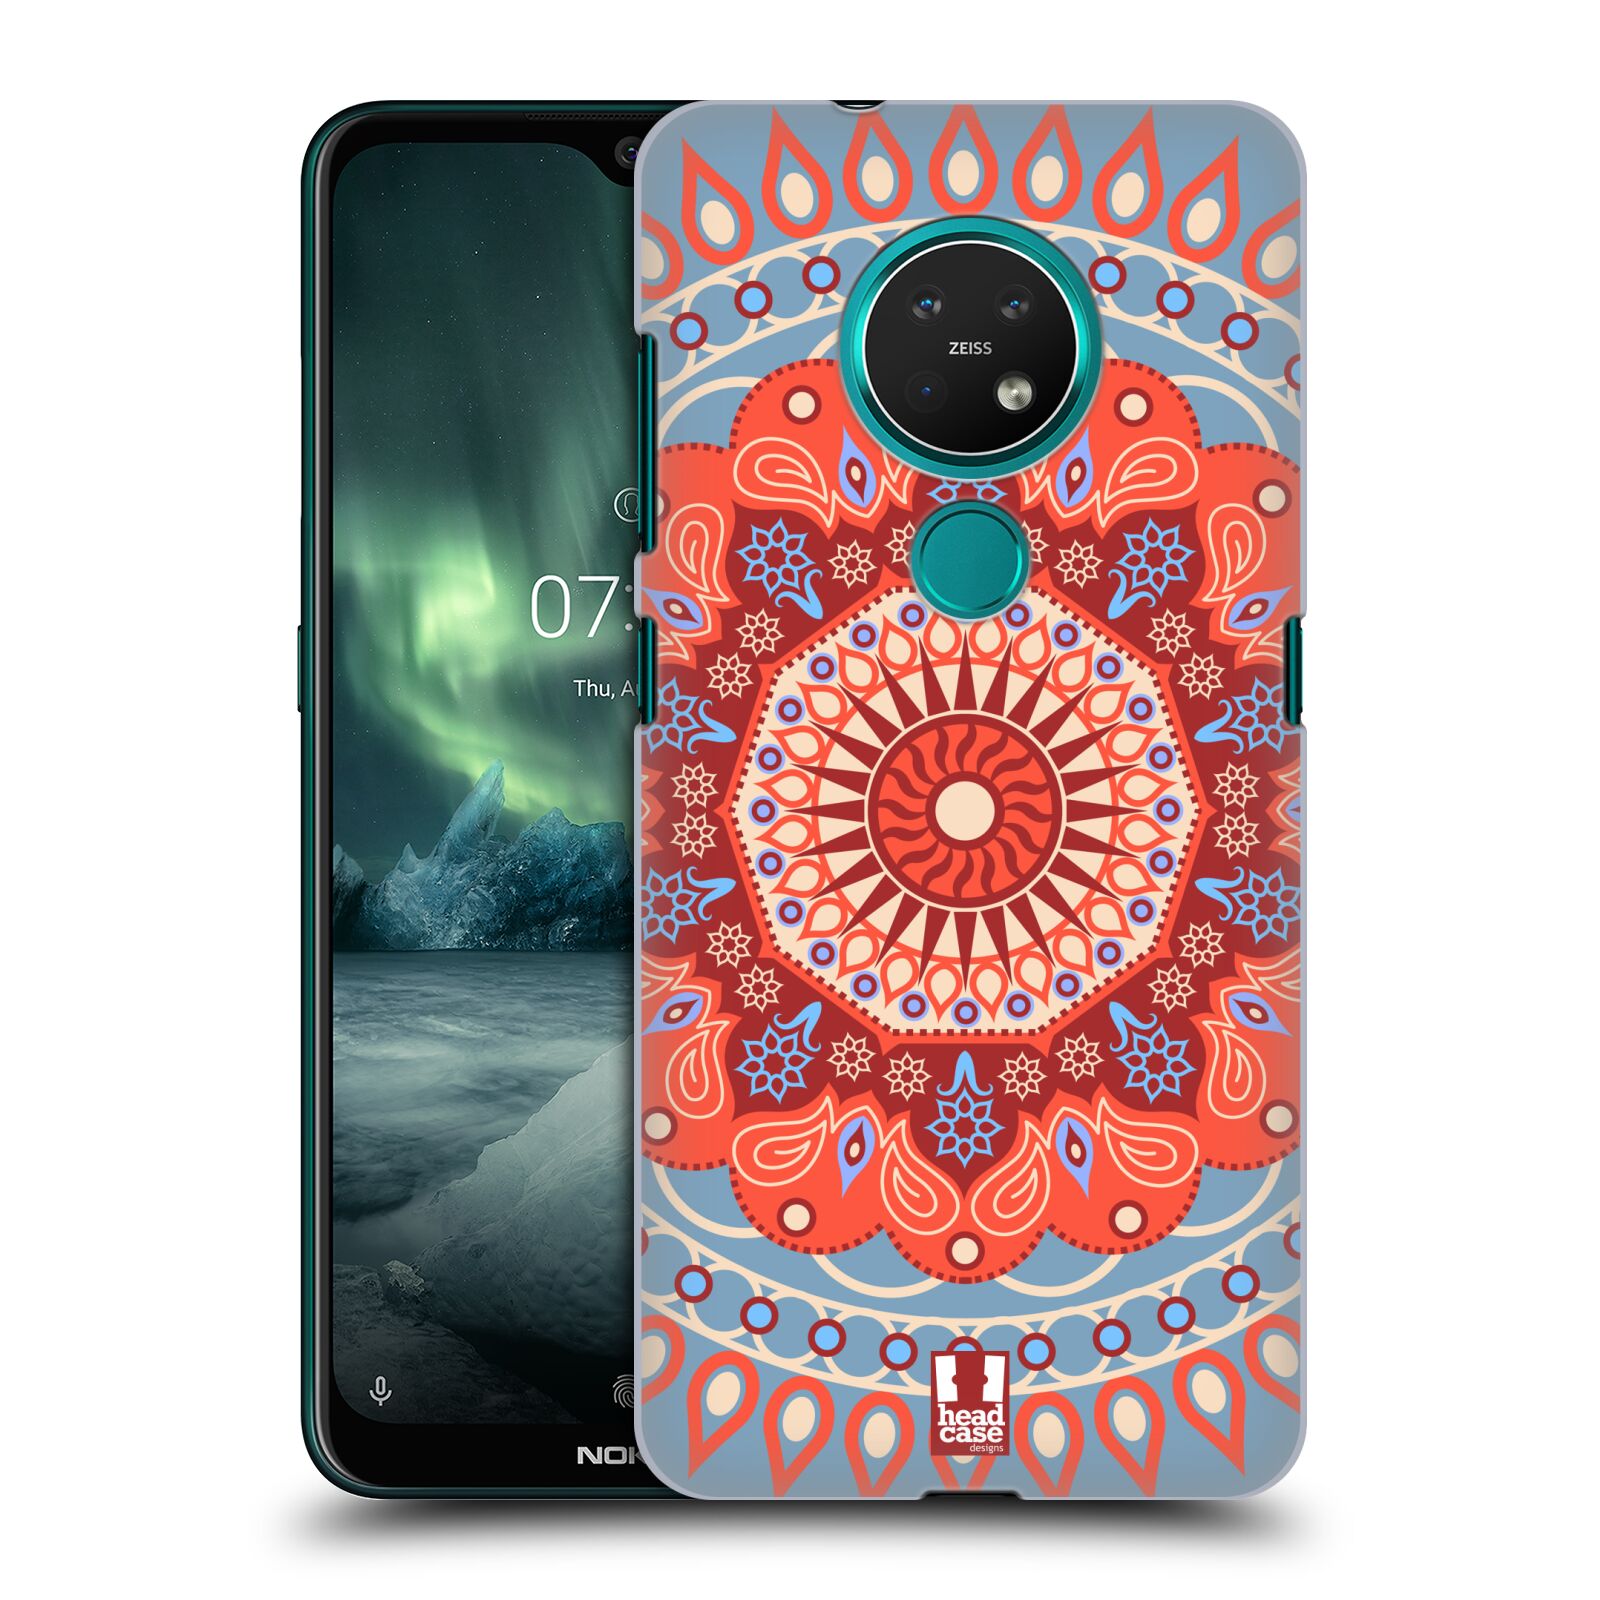 Pouzdro na mobil NOKIA 7.2 - HEAD CASE - vzor Indie Mandala slunce barevný motiv ČERVENÁ A MODRÁ